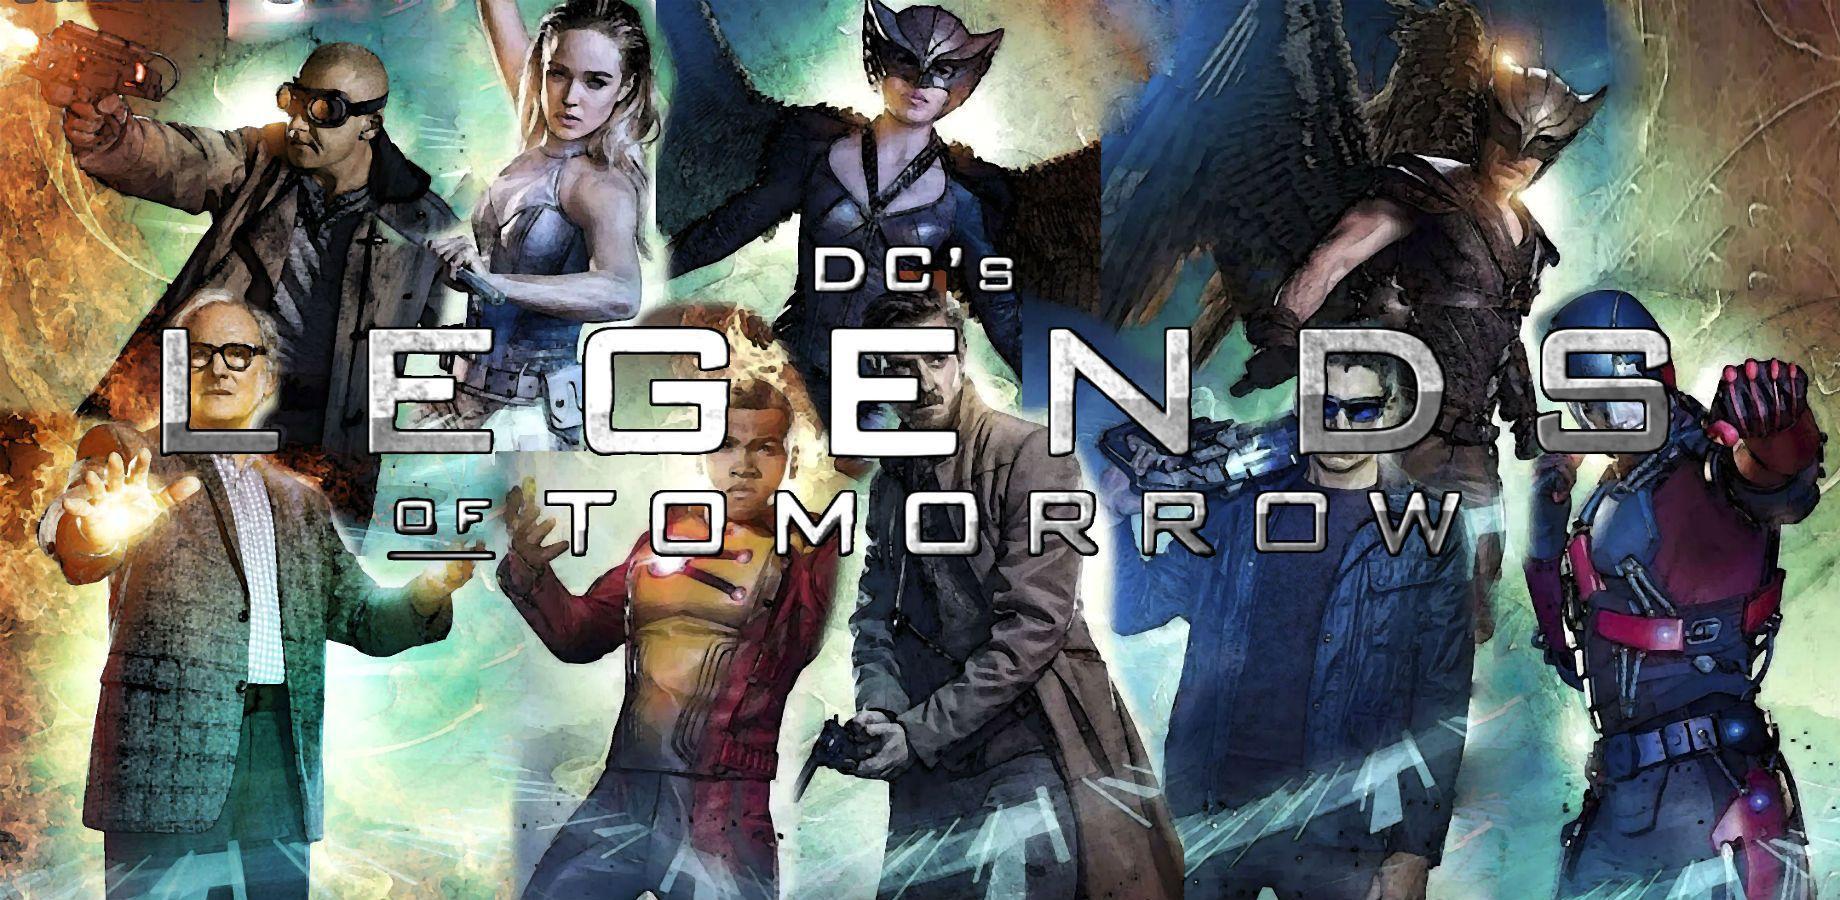 DC's Legends Of Tomorrow Computer Wallpaper, Desktop Background